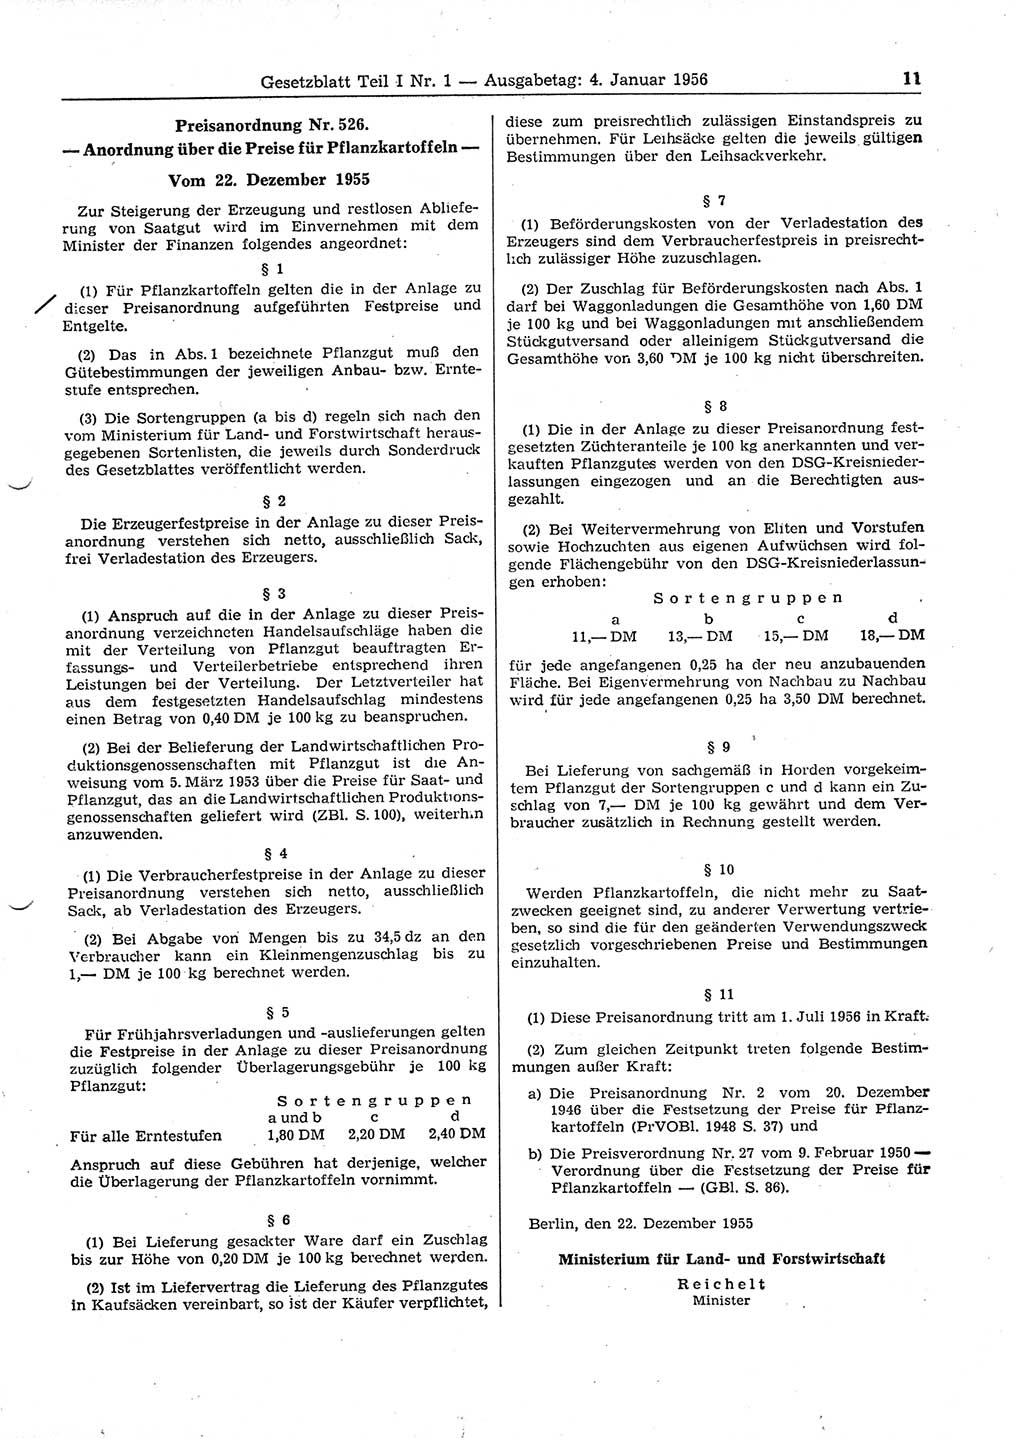 Gesetzblatt (GBl.) der Deutschen Demokratischen Republik (DDR) Teil Ⅰ 1956, Seite 11 (GBl. DDR Ⅰ 1956, S. 11)